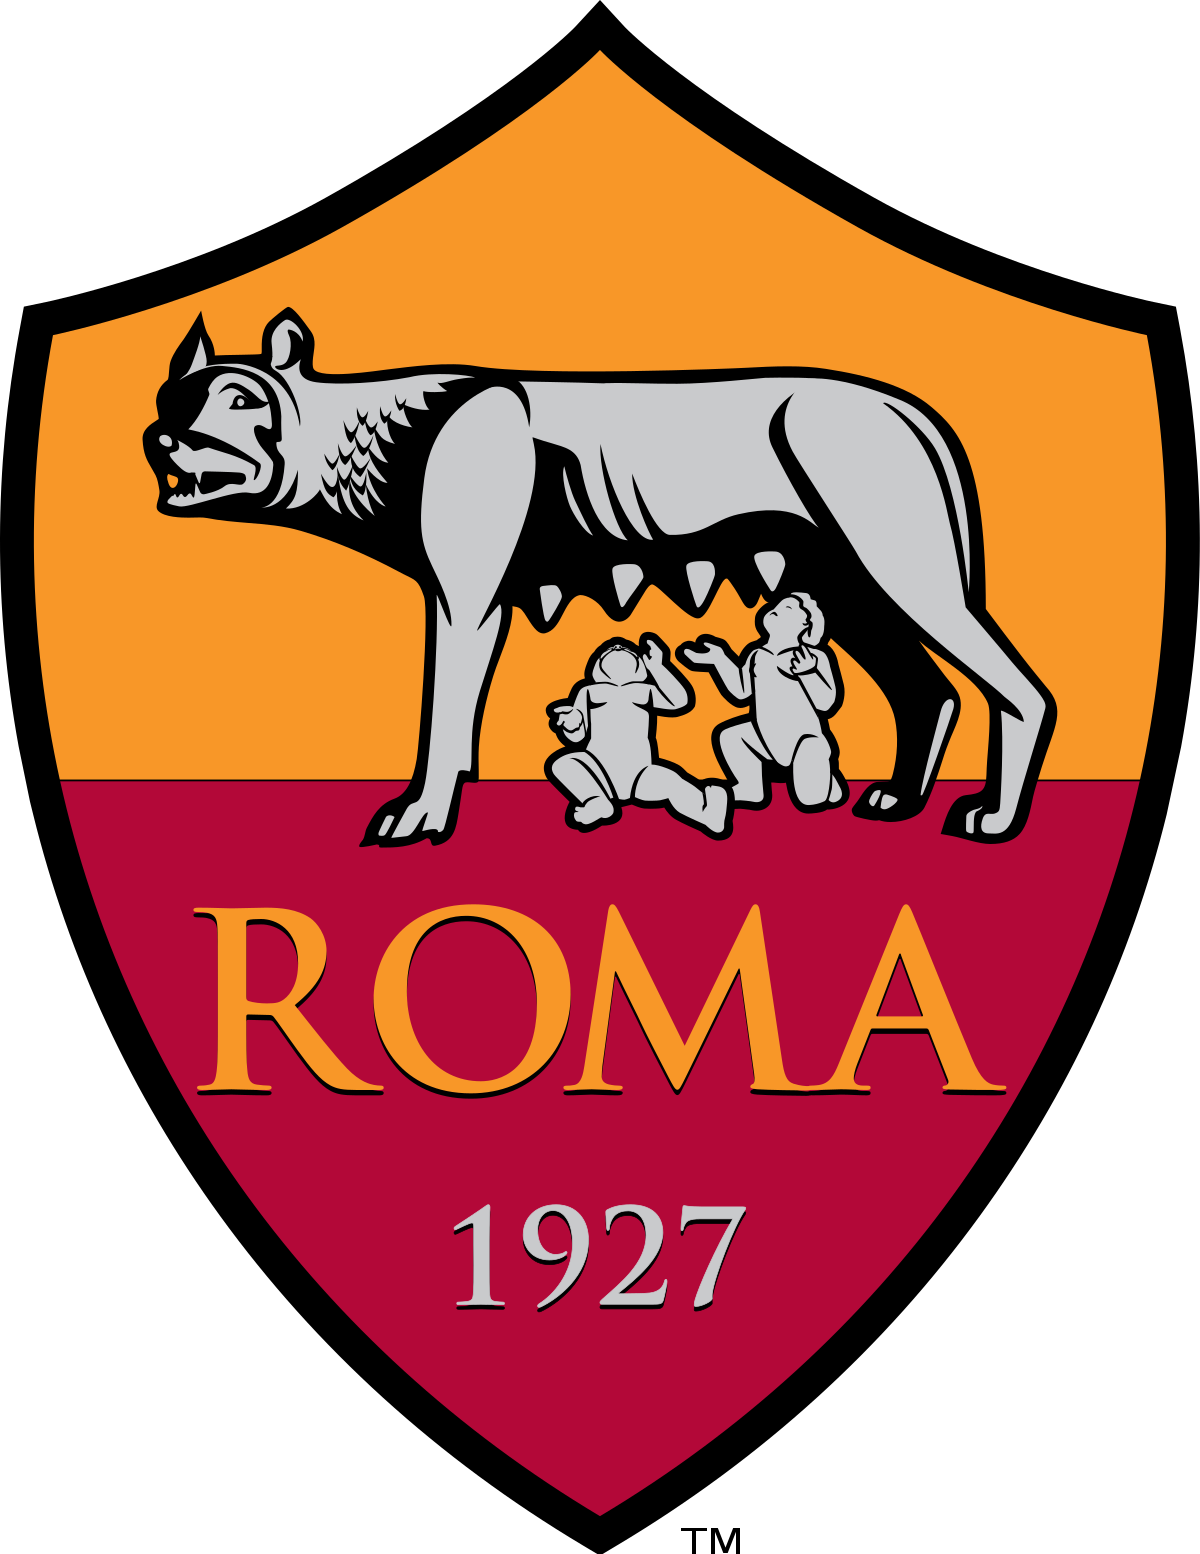 Roma Club Norvegia